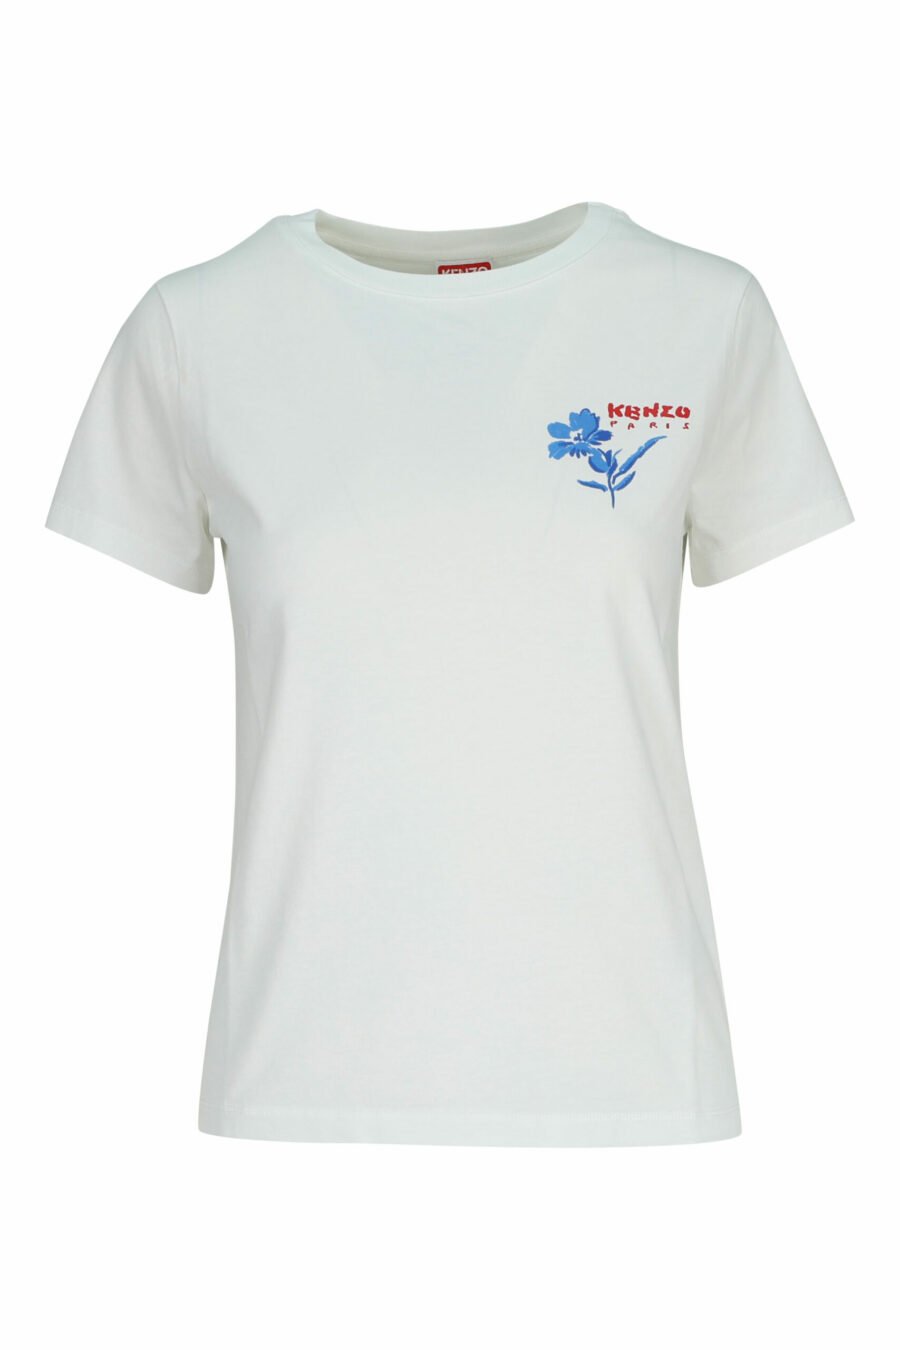 Camiseta blanca con minilogo "drawn flower" - 3612230587281 scaled